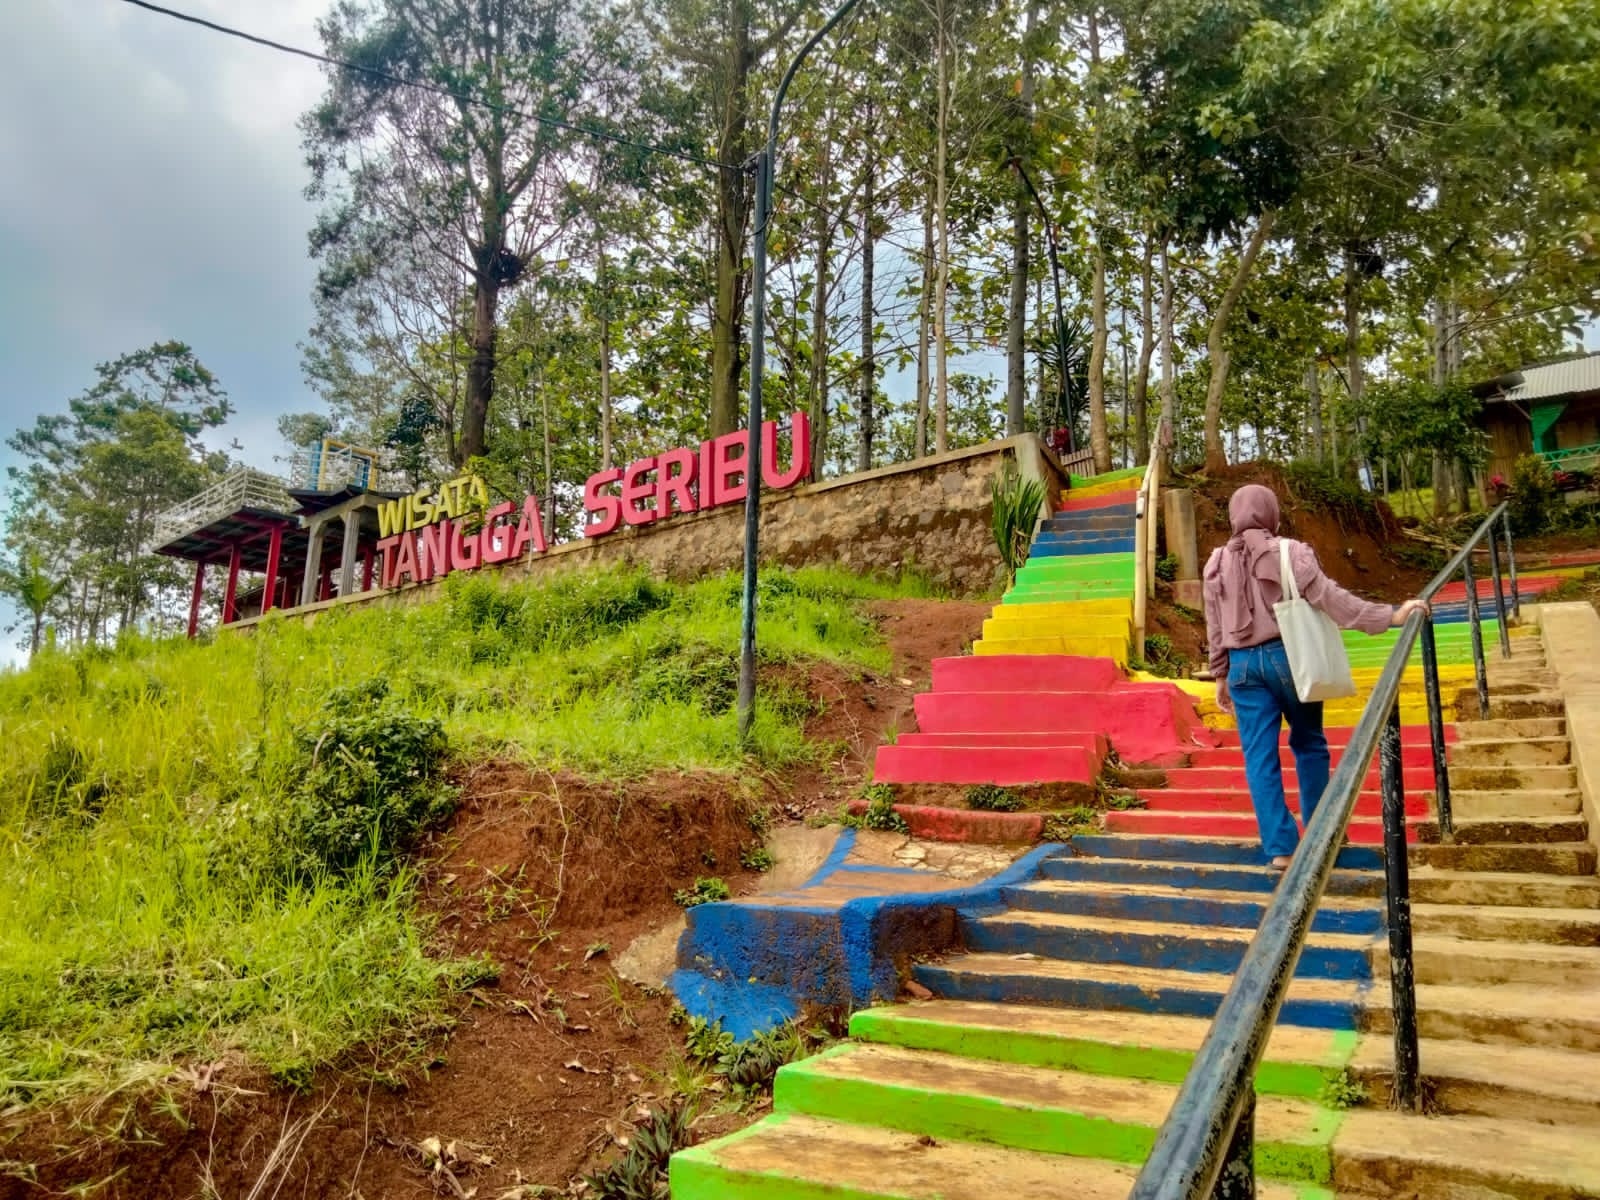 Salah satu wisata alam terbuka yang menarik berada di Bandung Timur yaitu Tangga Seribu dengan nuansa warna-warni tangga. (FAHMINAH/JABAR EKSPRES)